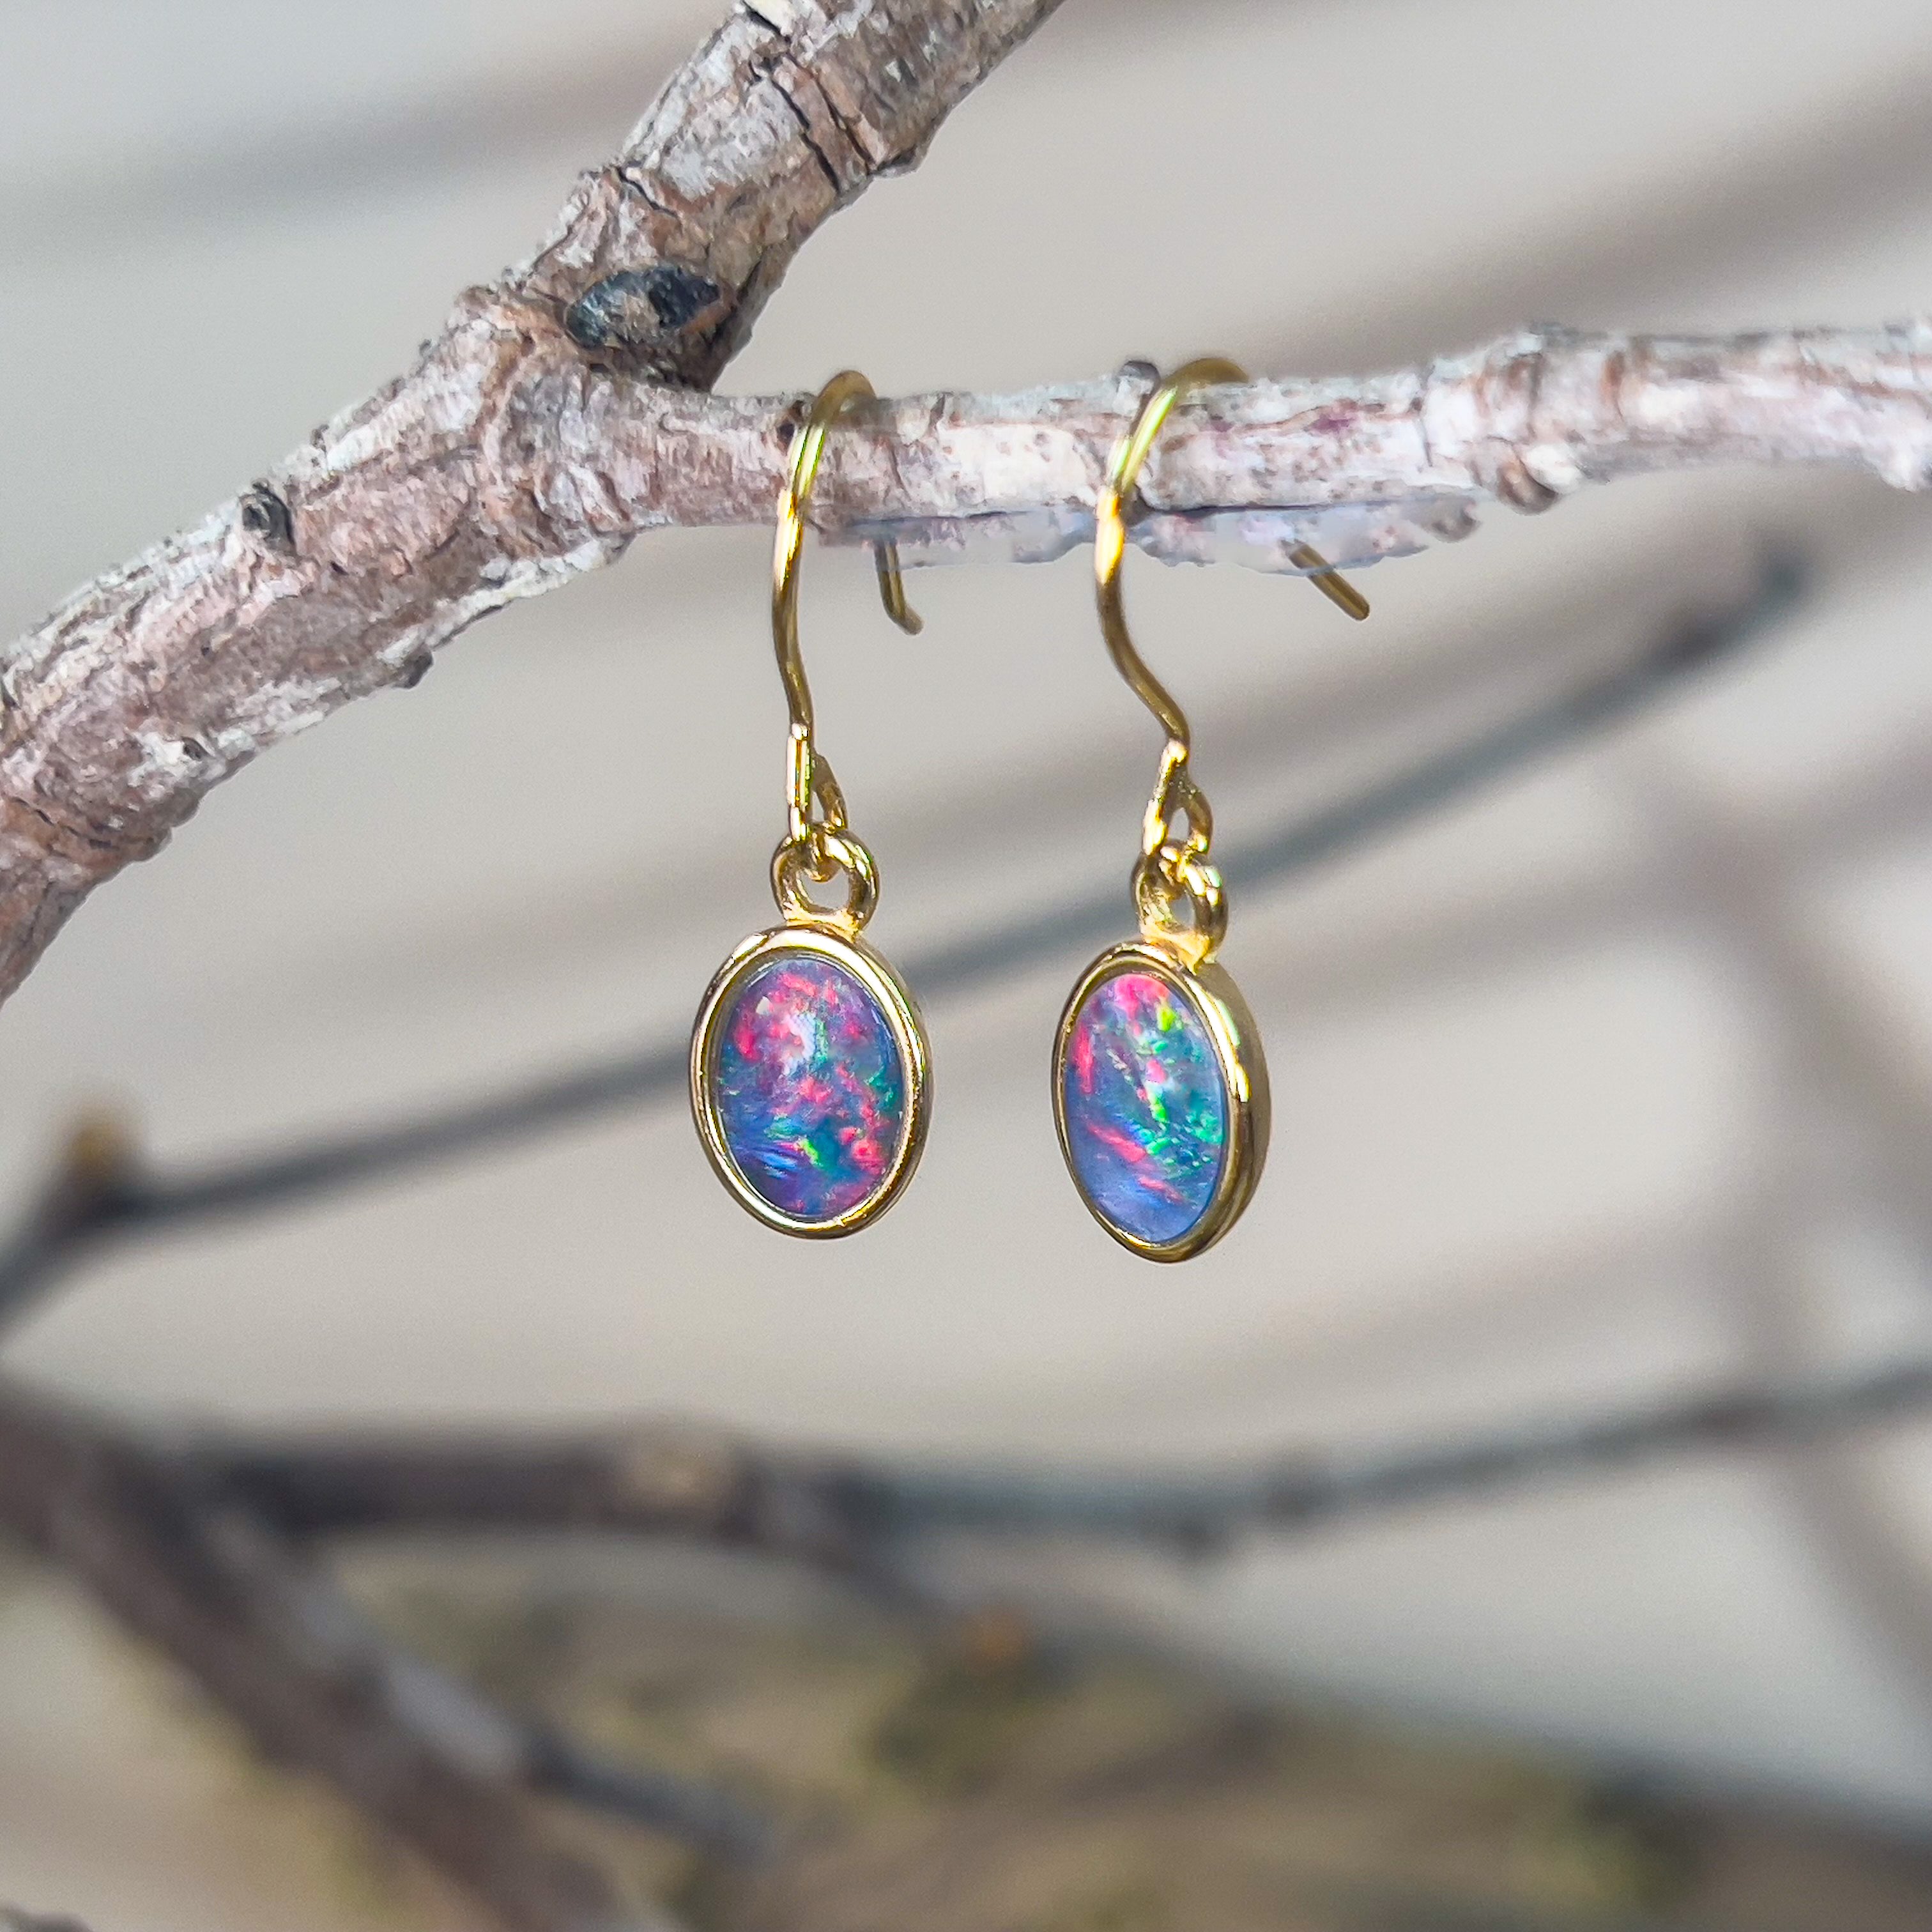 Gold plated dangling Opal triplet oval earring hooks - Masterpiece Jewellery Opal & Gems Sydney Australia | Online Shop